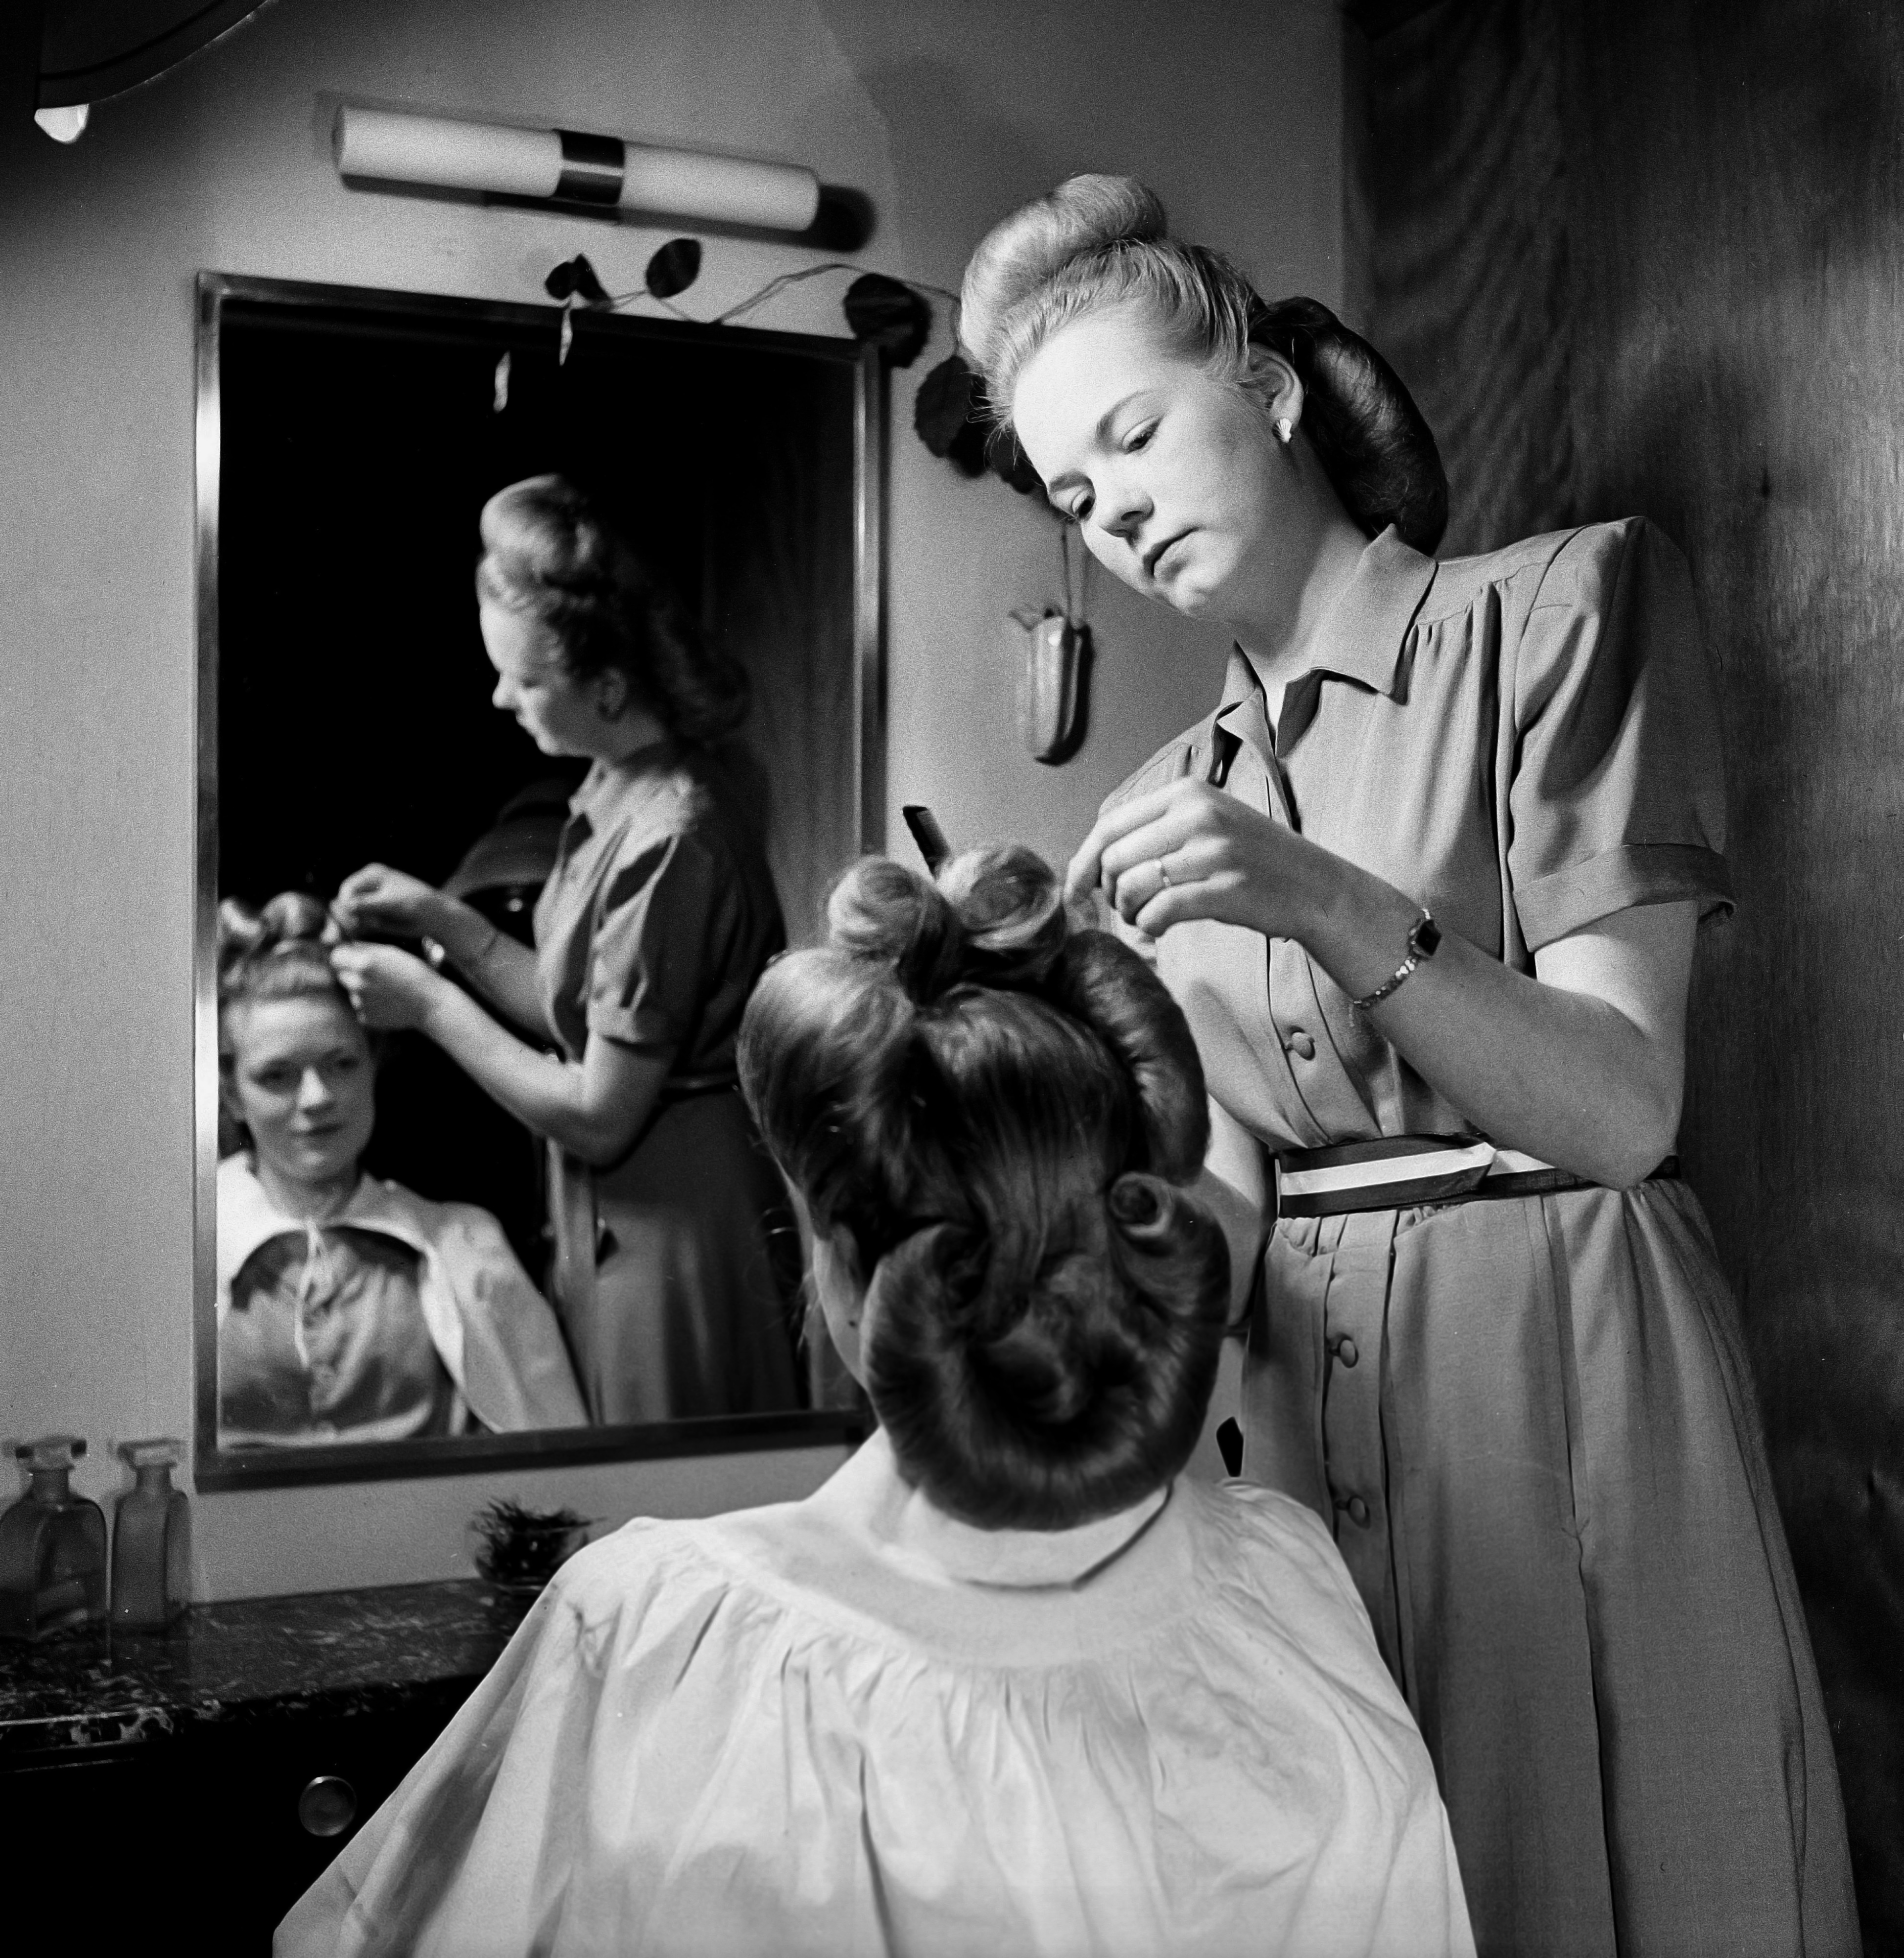 En skicklig frisör lägger upp en vågig frisyr som blivit populär i vintage-kretsar.